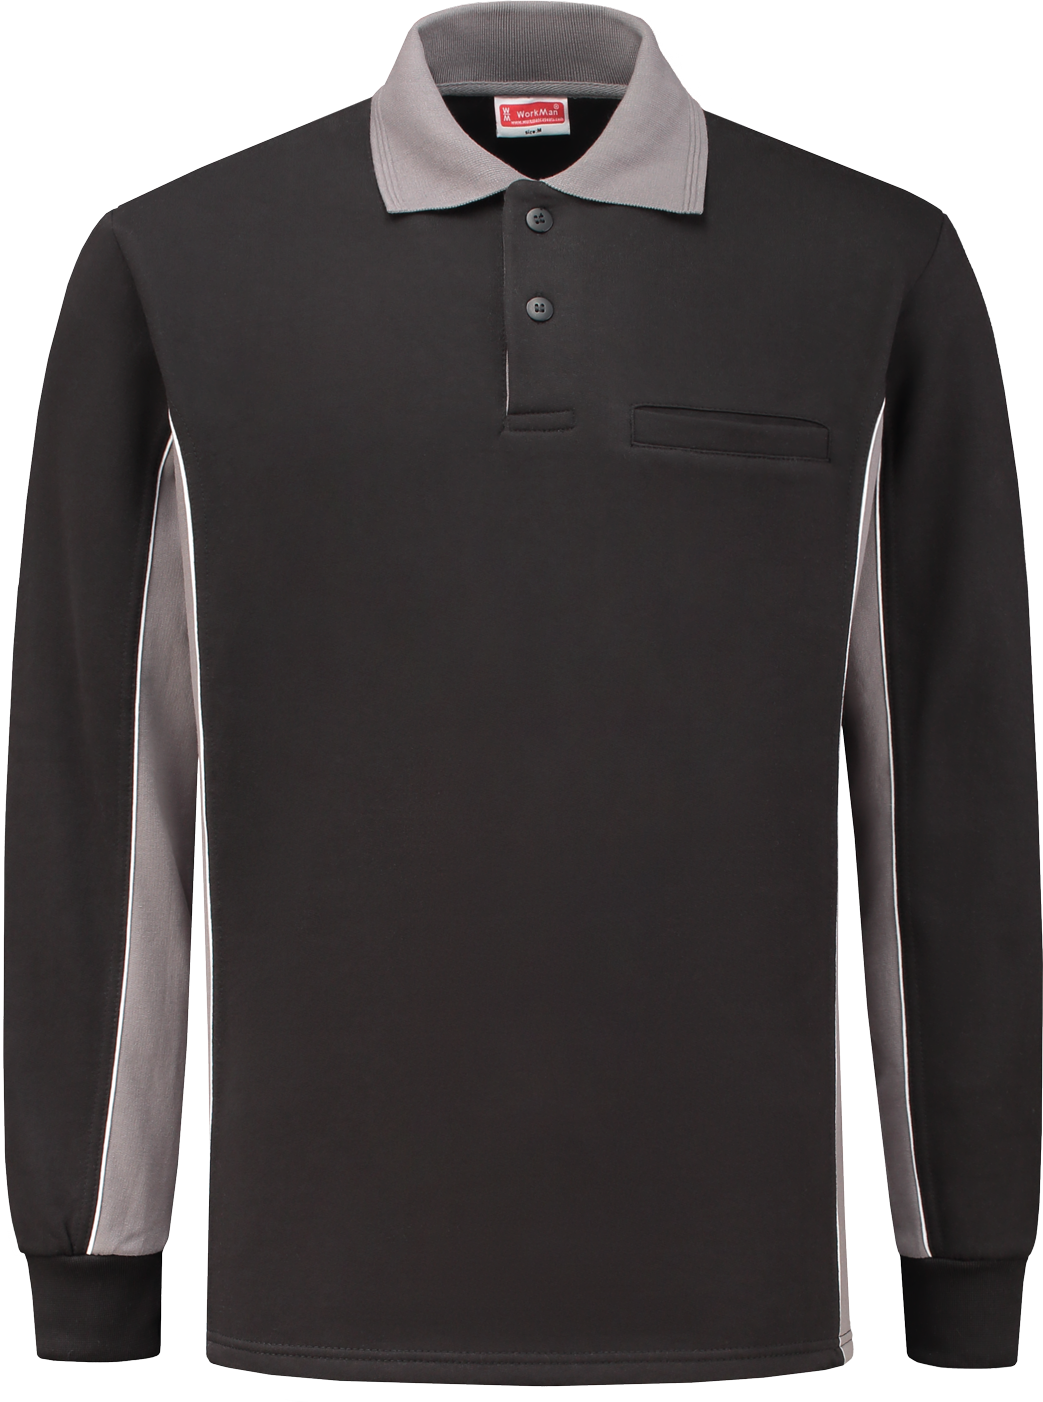 10.6.2406.04 2406 Polosweater Bi-Colour Zwart / Grijs XL